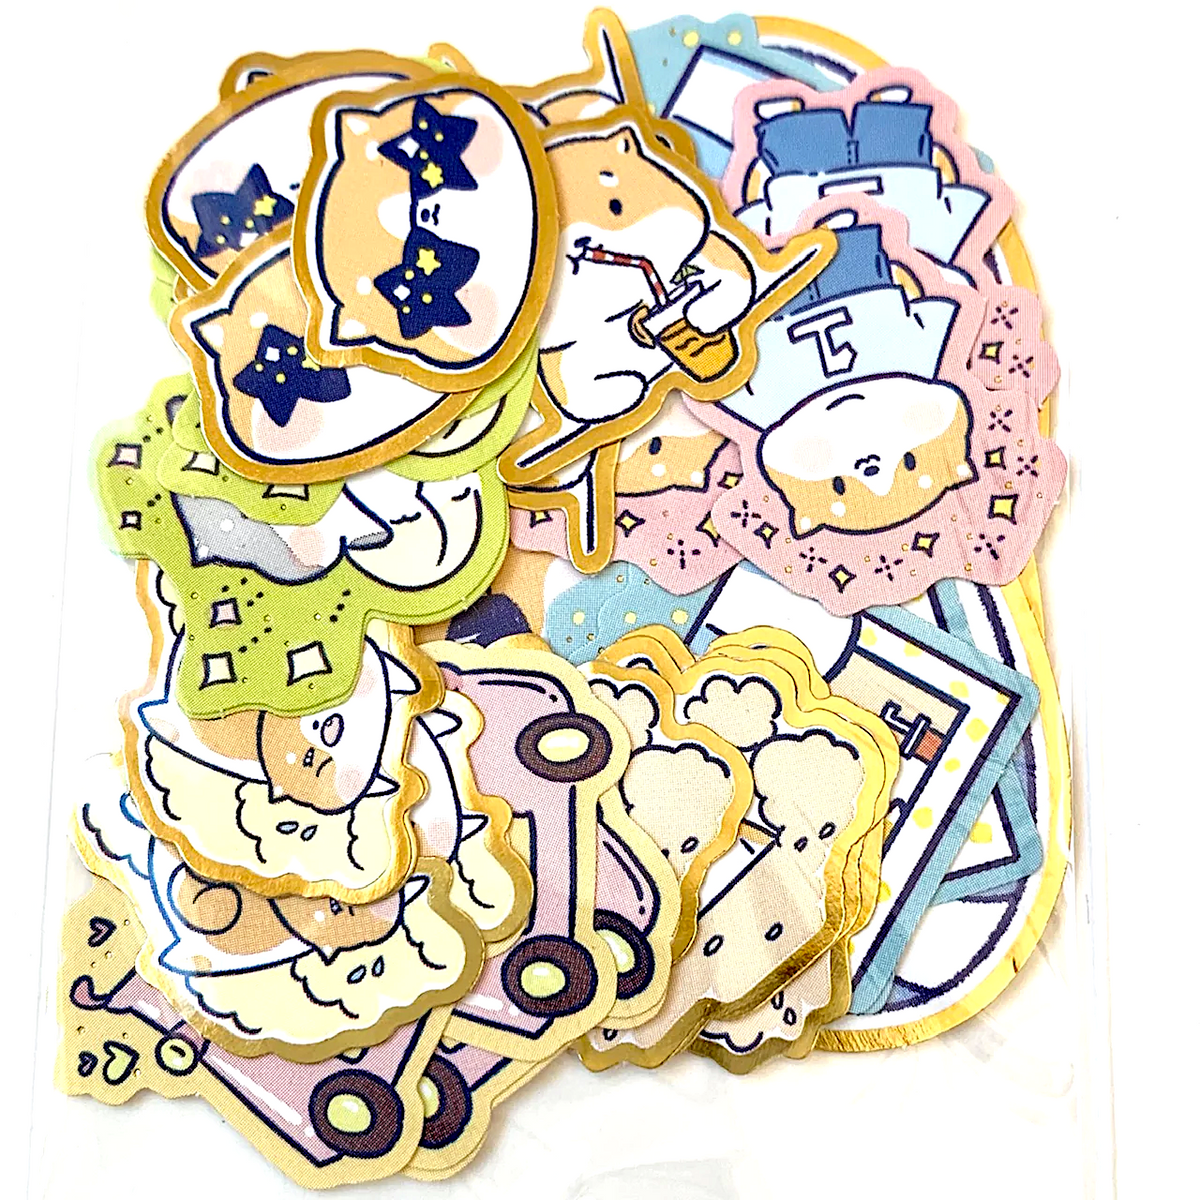 BC Mini Nekoni Bubble Tea Stickers, Seal